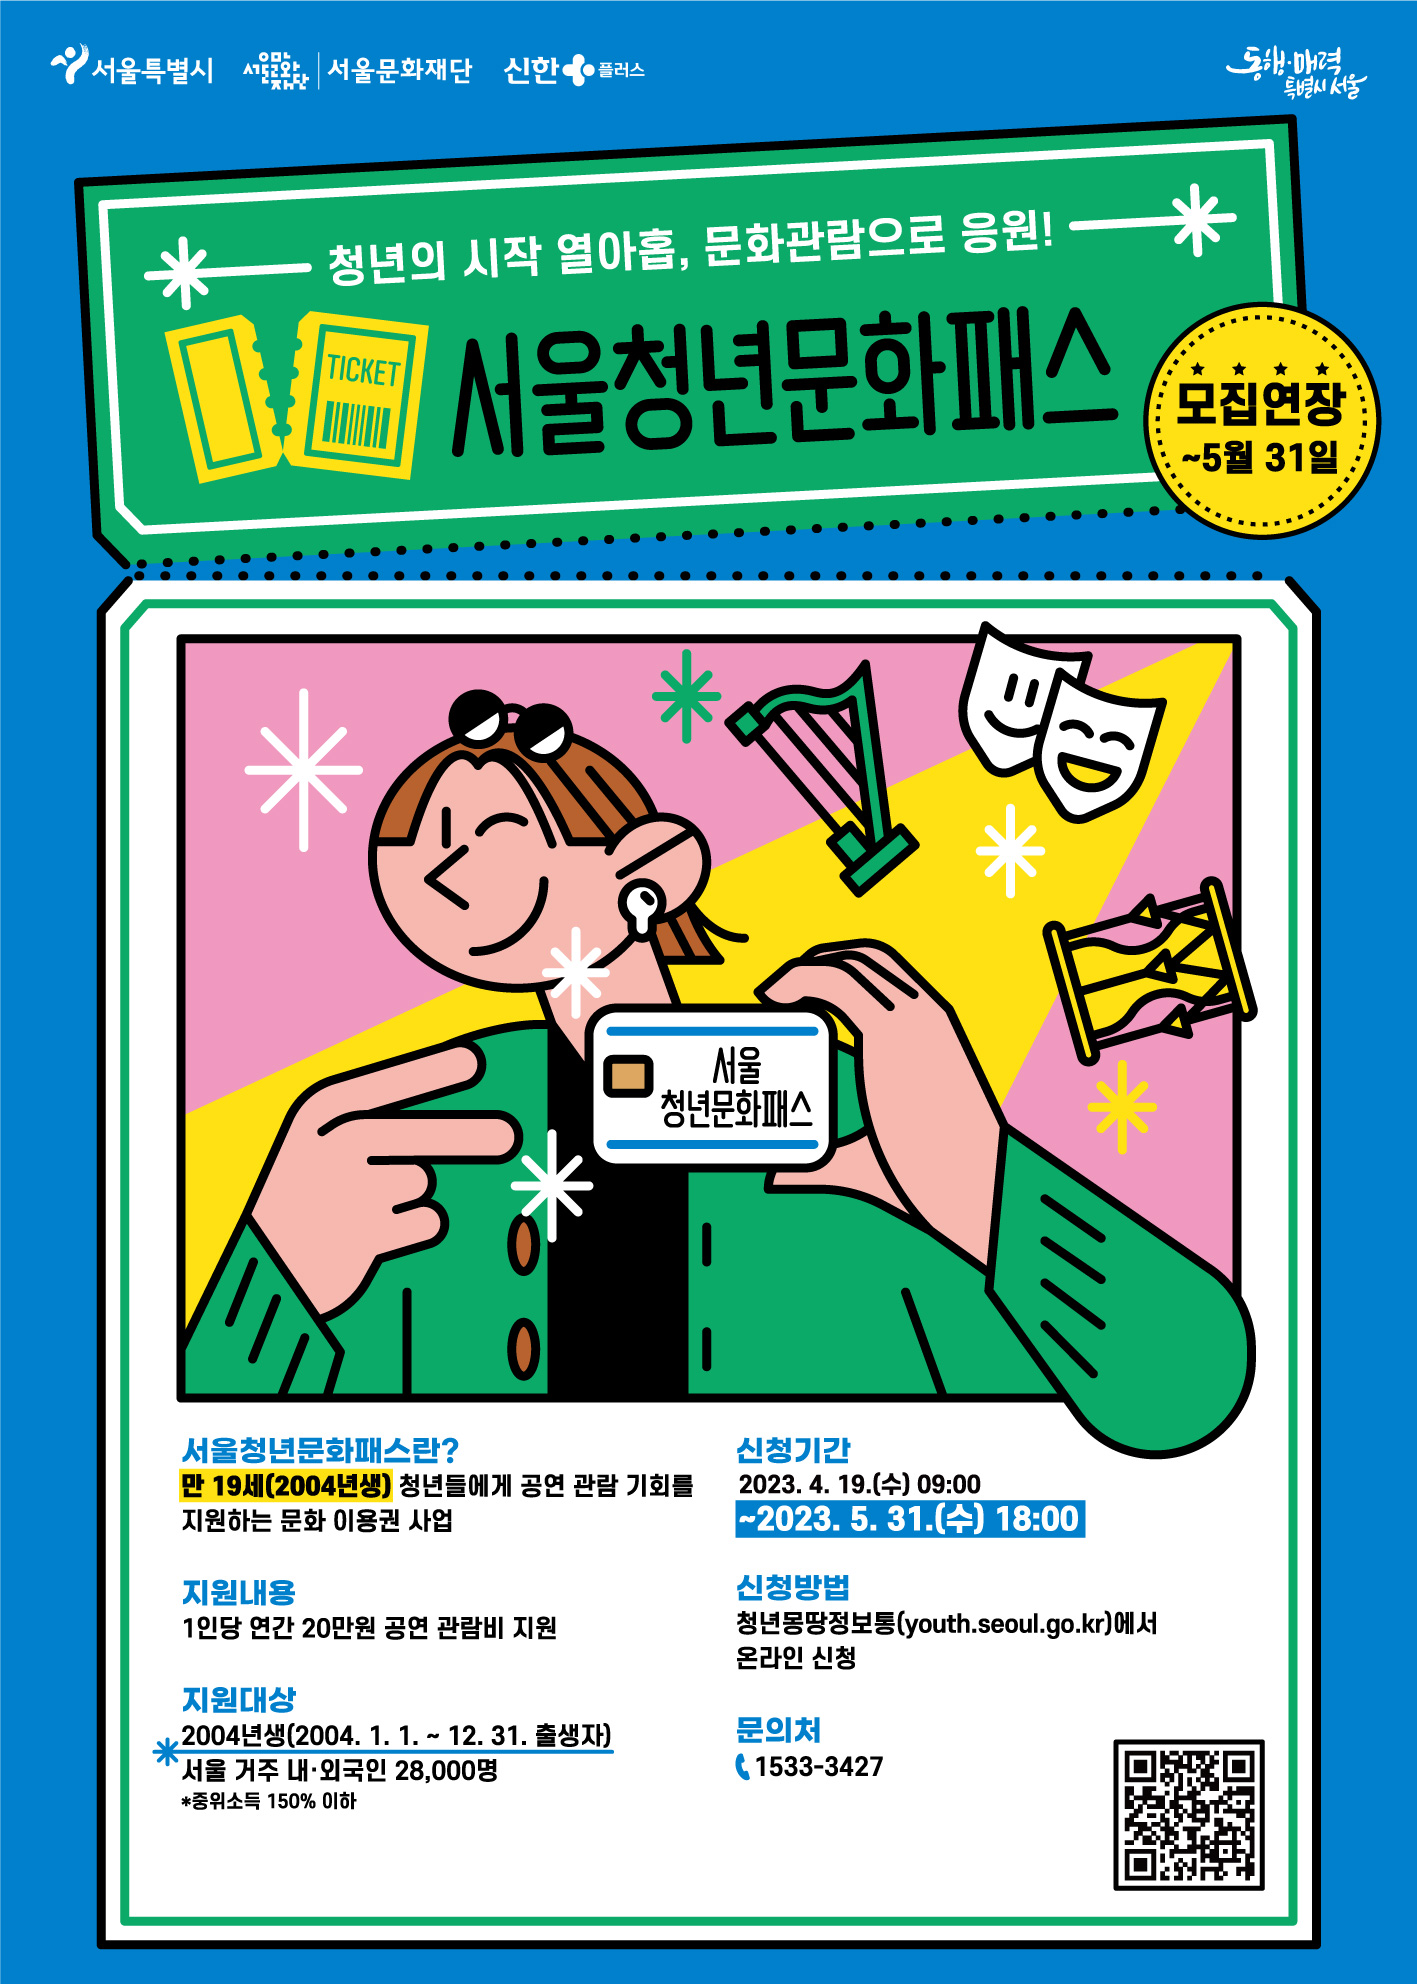 서울시는 5월 31일까지 기간을 연장해 ‘서울청년문화패스’ 신청을 받고 있다.